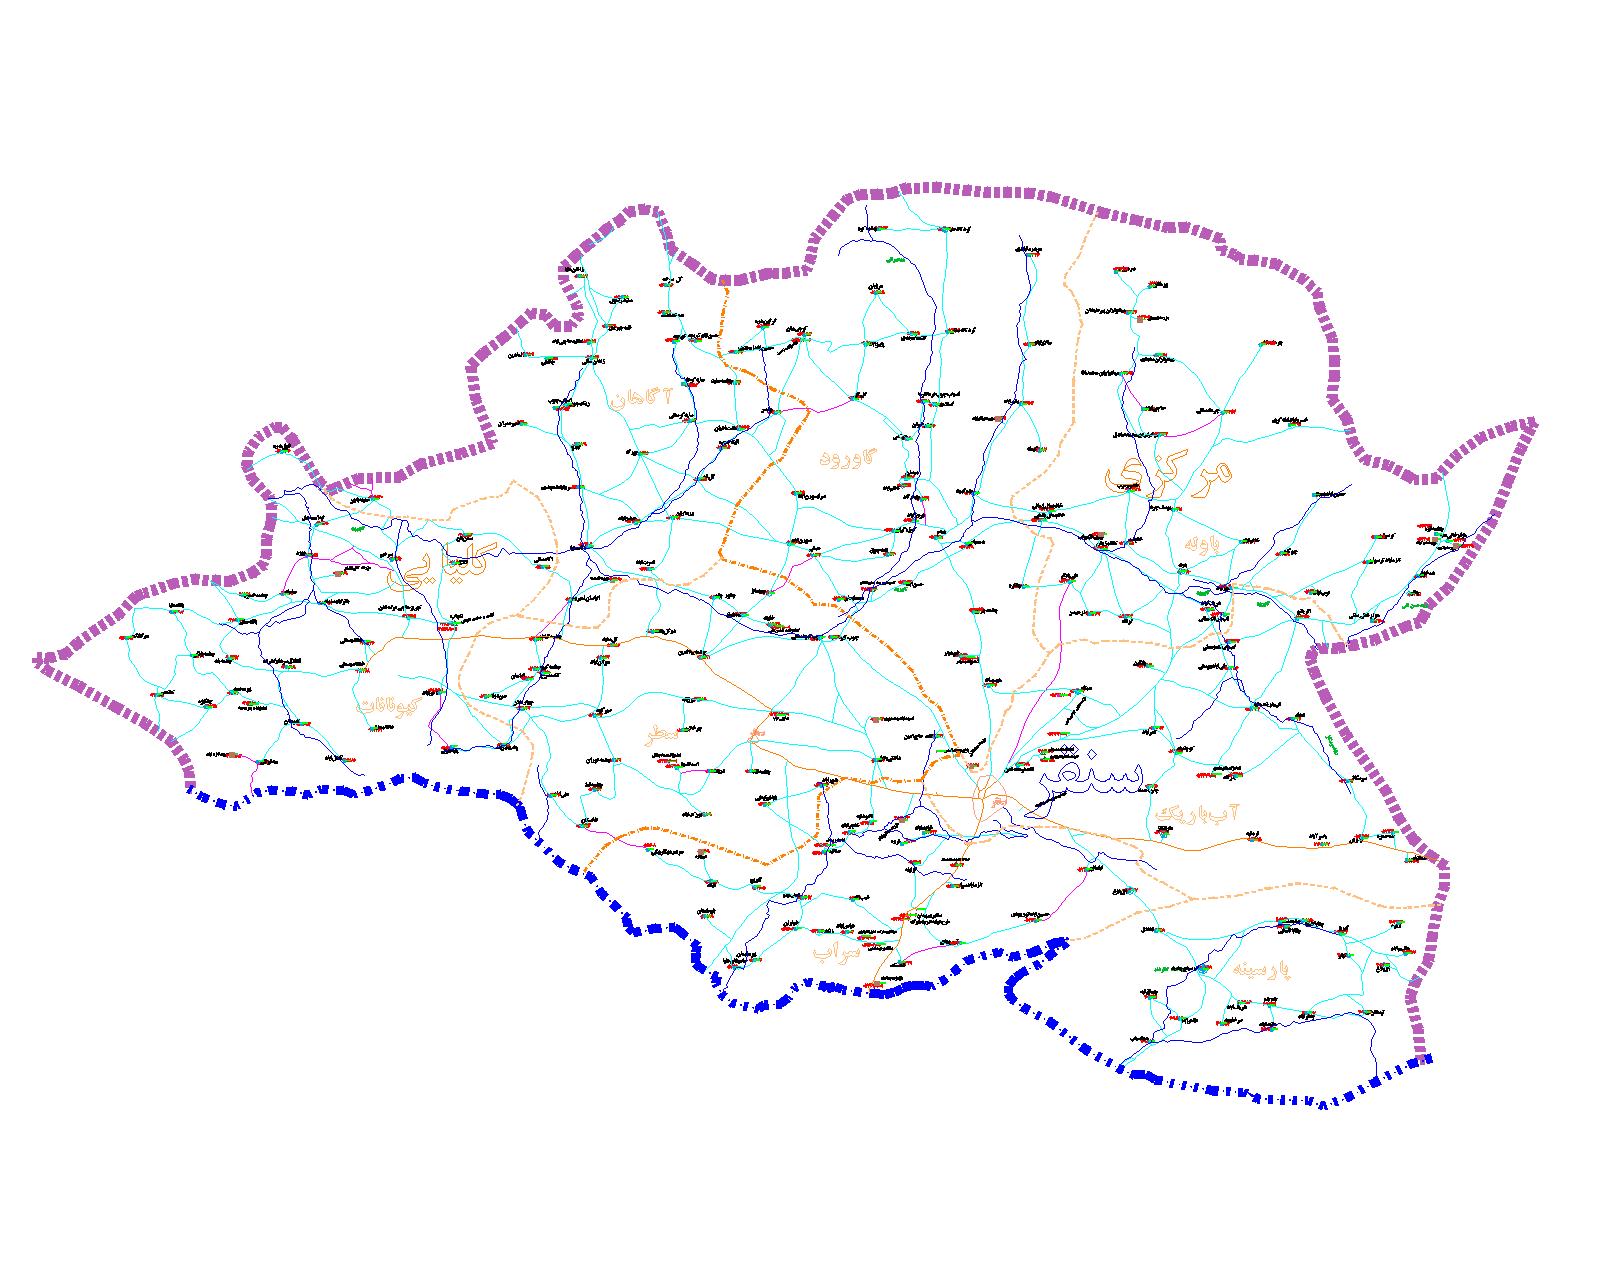 دانلود نقشه اتوکدی شهرستان سنقر - استان کرمانشاه - فایل کده: فروشگاه همه!